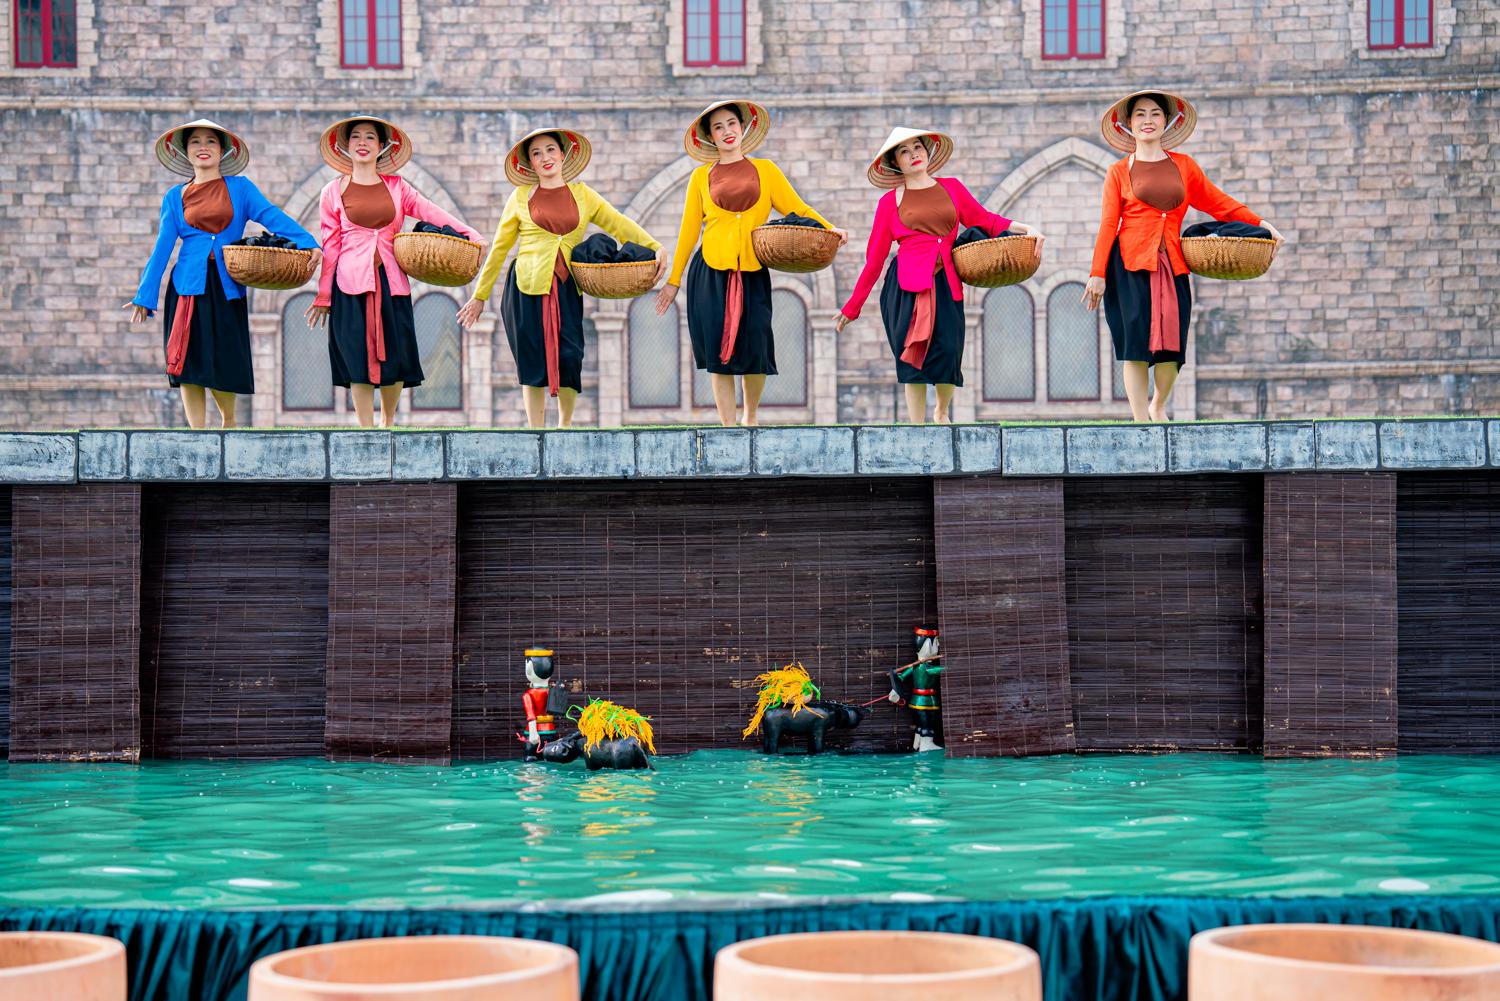 Show diễn đưa khán giả vào “dòng chảy” văn hóa Việt qua những câu chuyện dân gian thân thuộc.